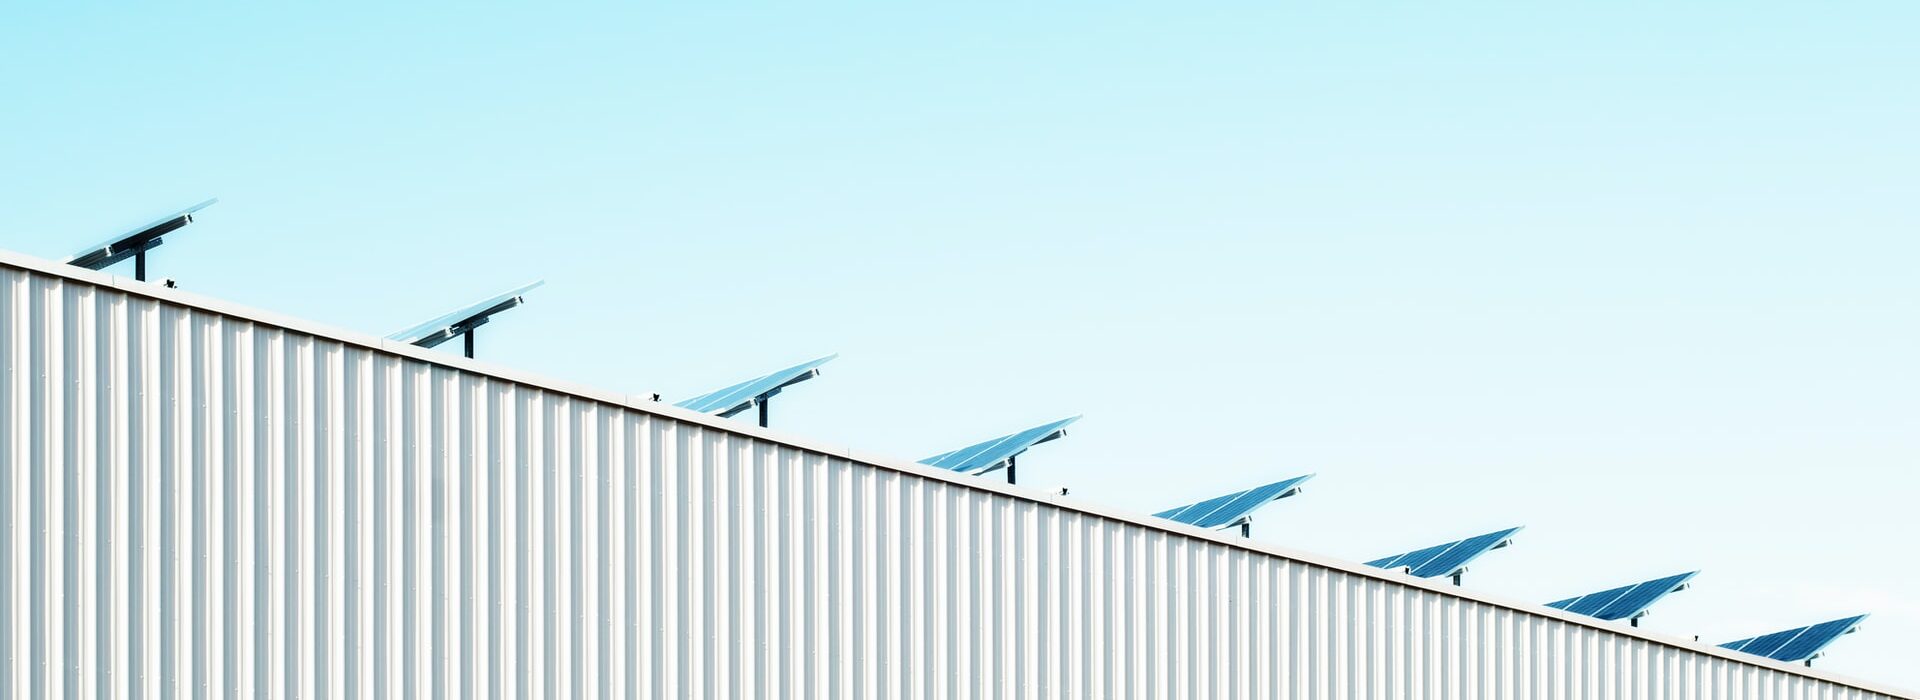 placas solares - O que é Energia Fotovoltaica e como isso vai fazer a sua empresa lucrar mais